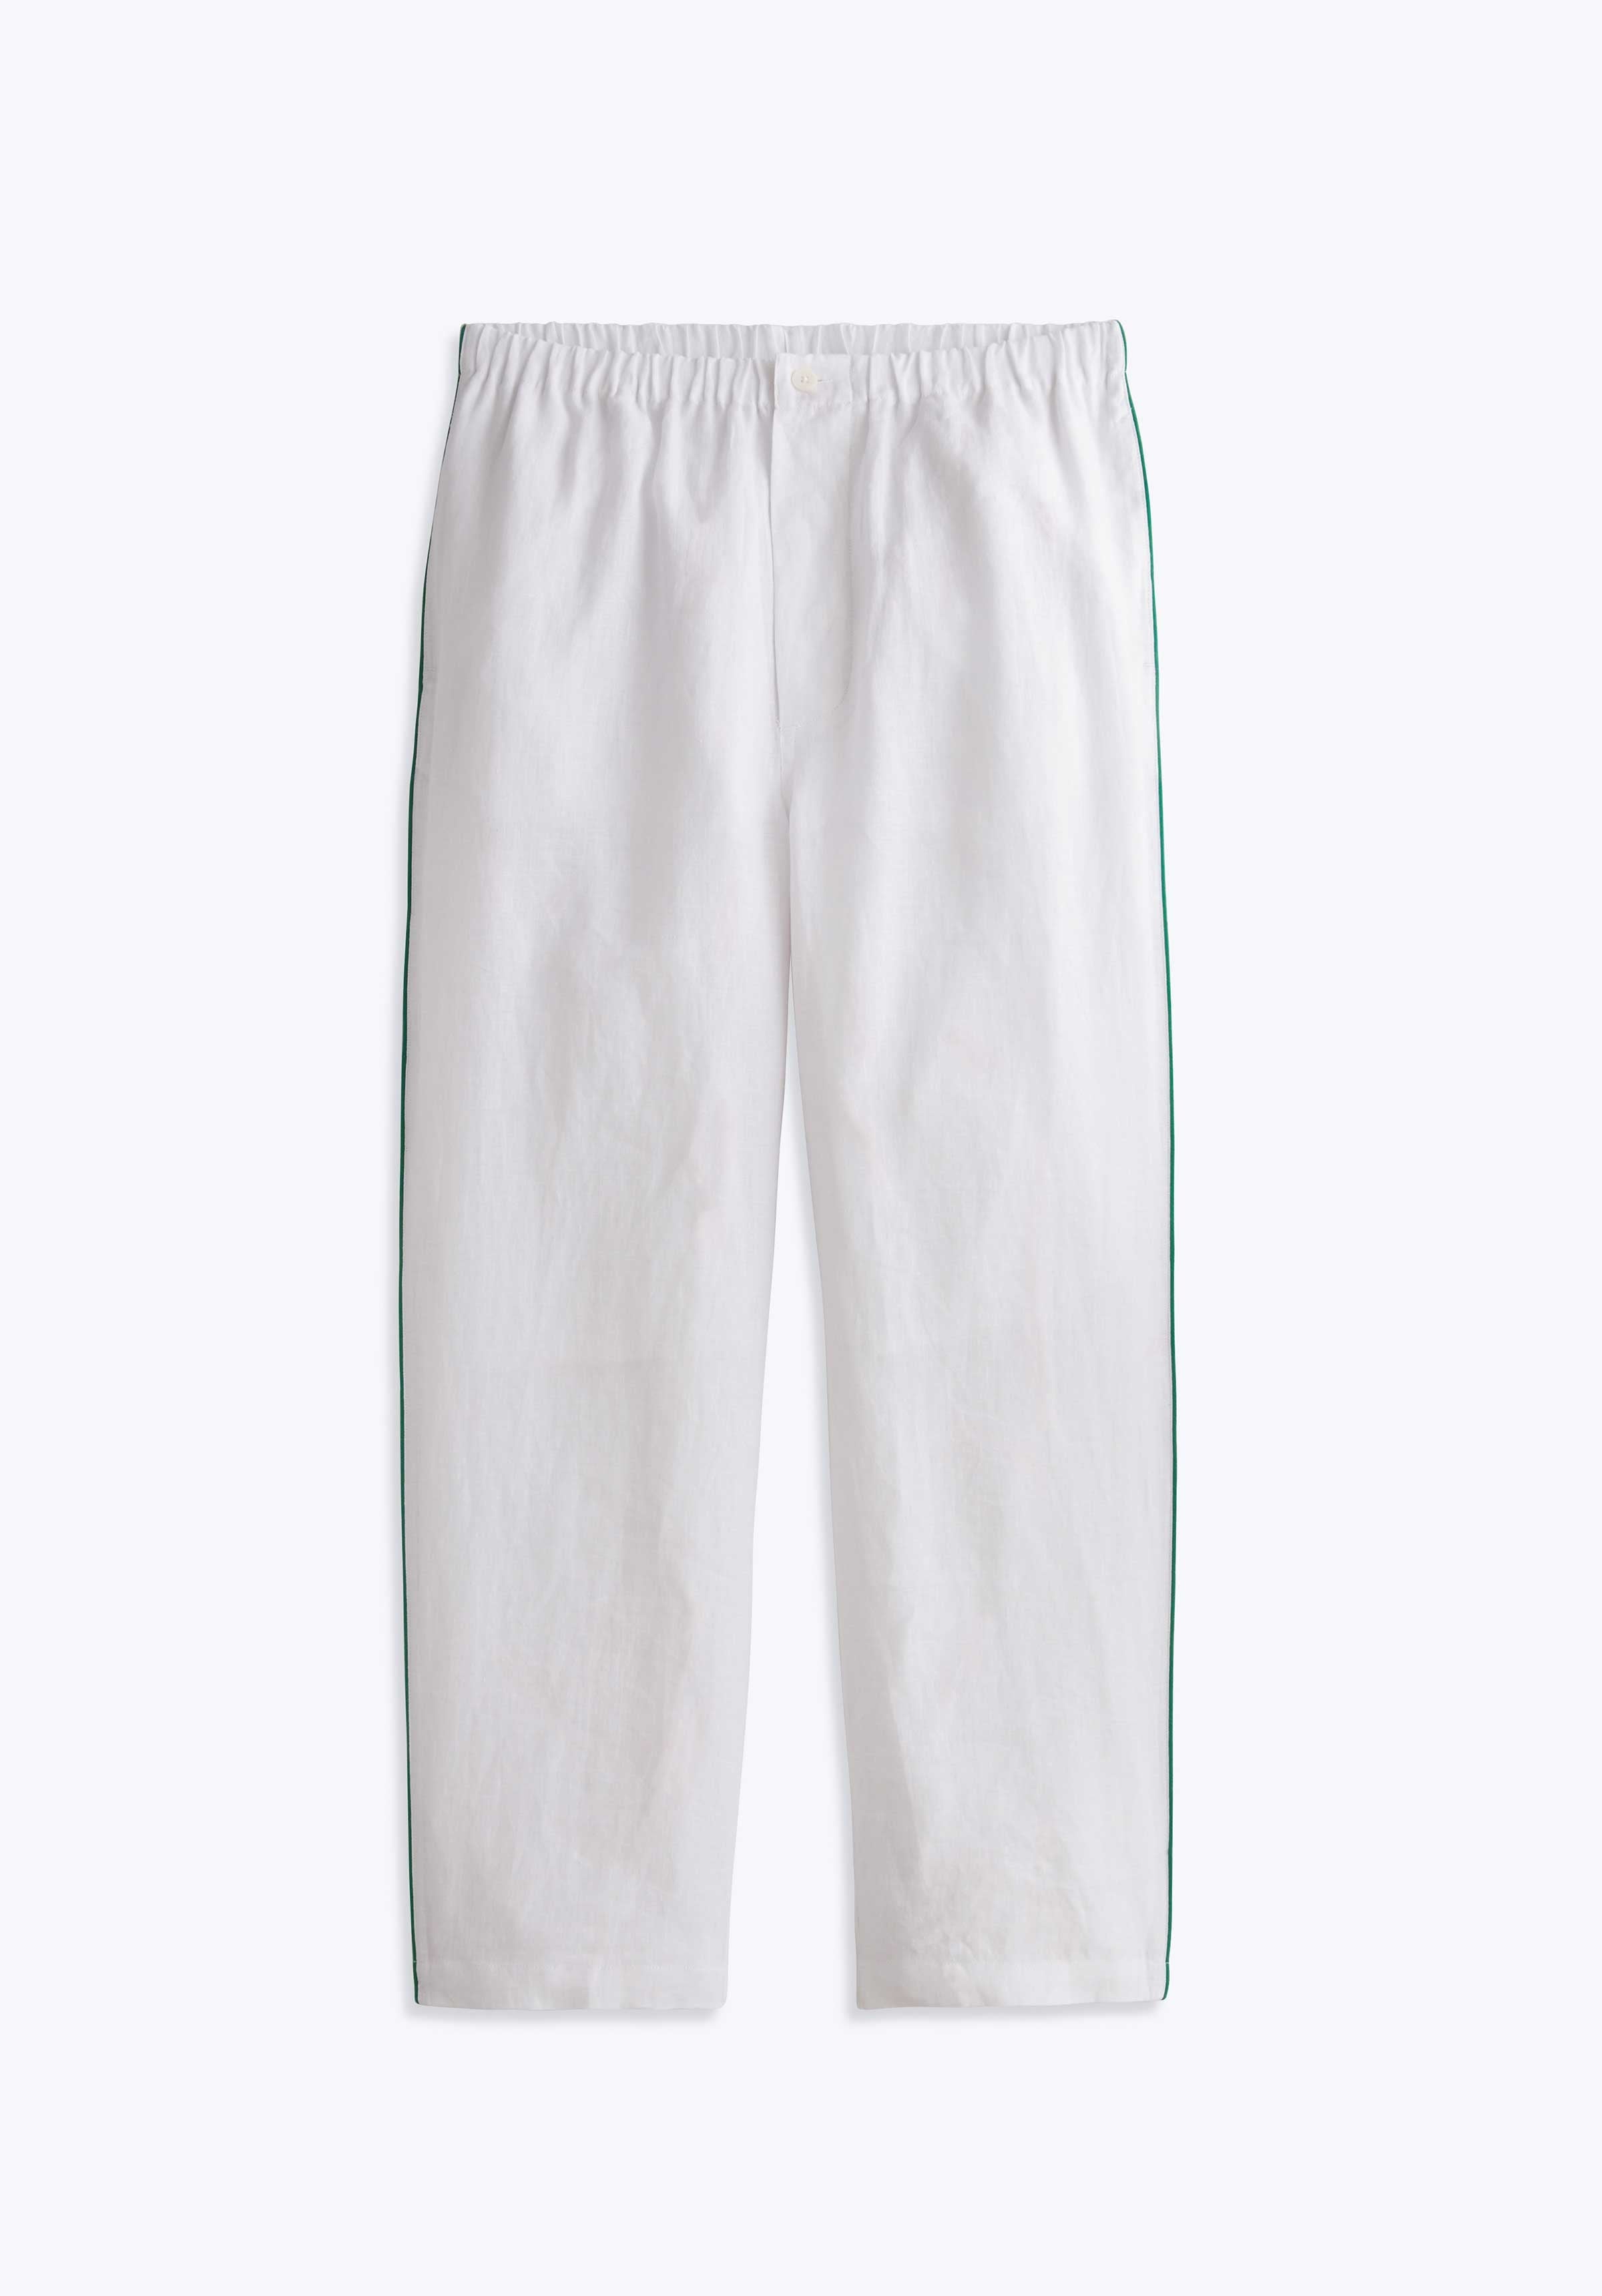 The Foundry Big & Tall Men's Microfleece Pajama Sleep Pants 2XLT 3XLT 4XLT  5XLT | eBay